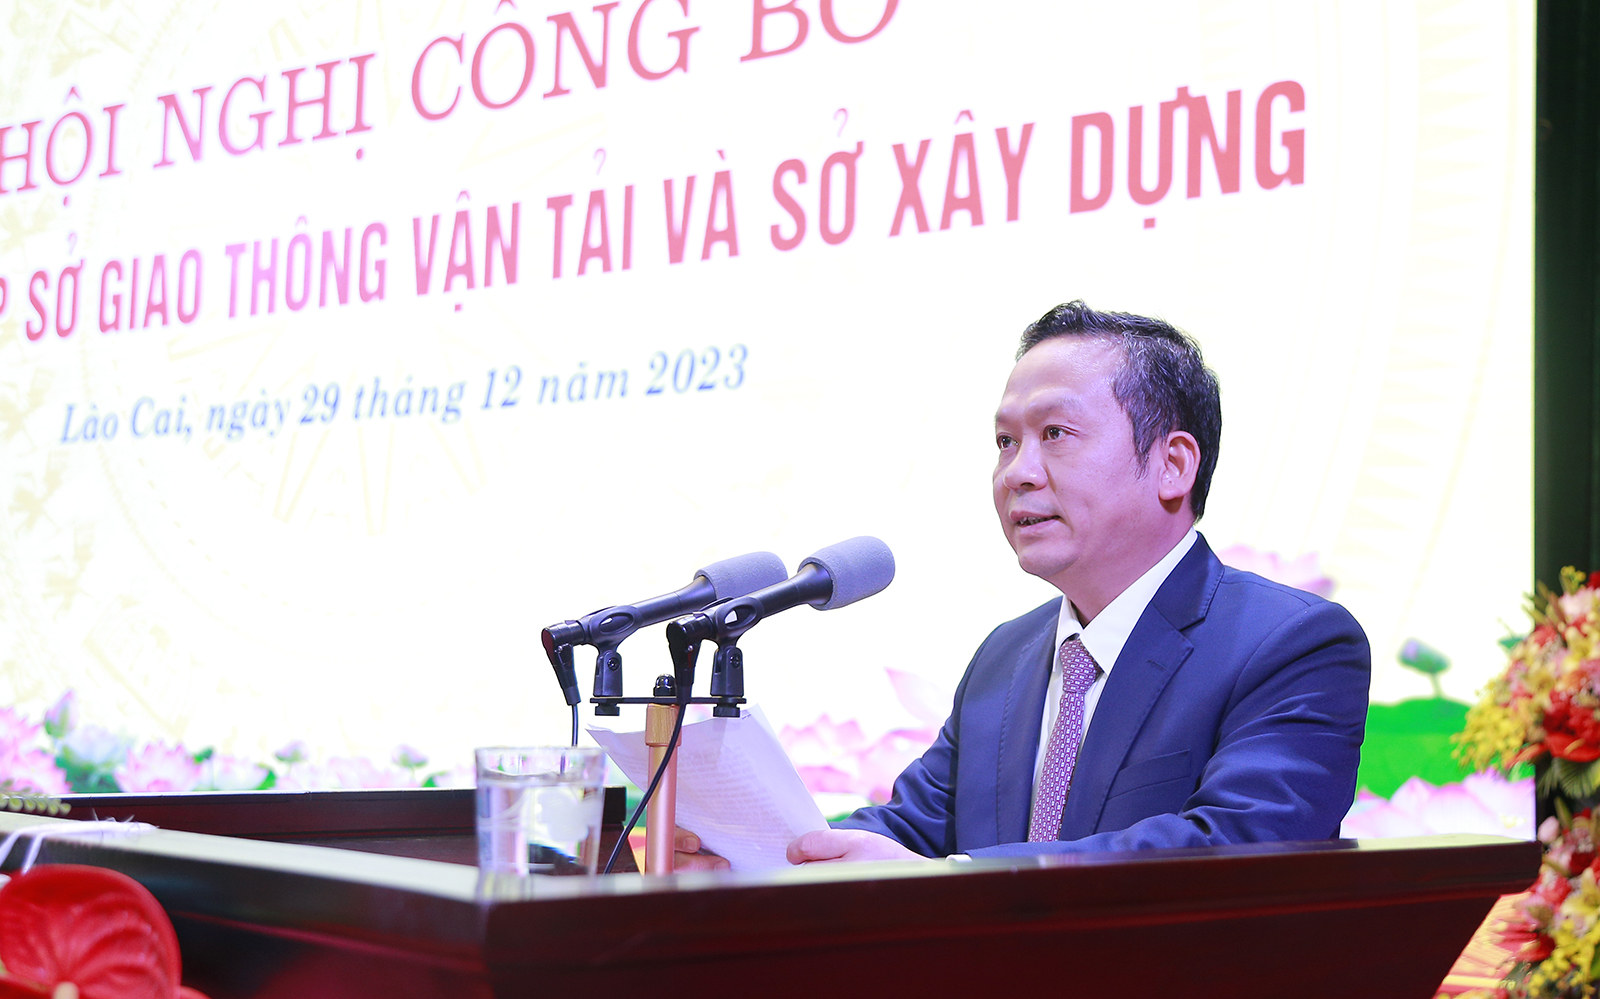 Lào Cai thành lập Sở Giao thông vận tải và Sở Xây dựng, bổ nhiệm lãnh đạo 2 Sở- Ảnh 4.